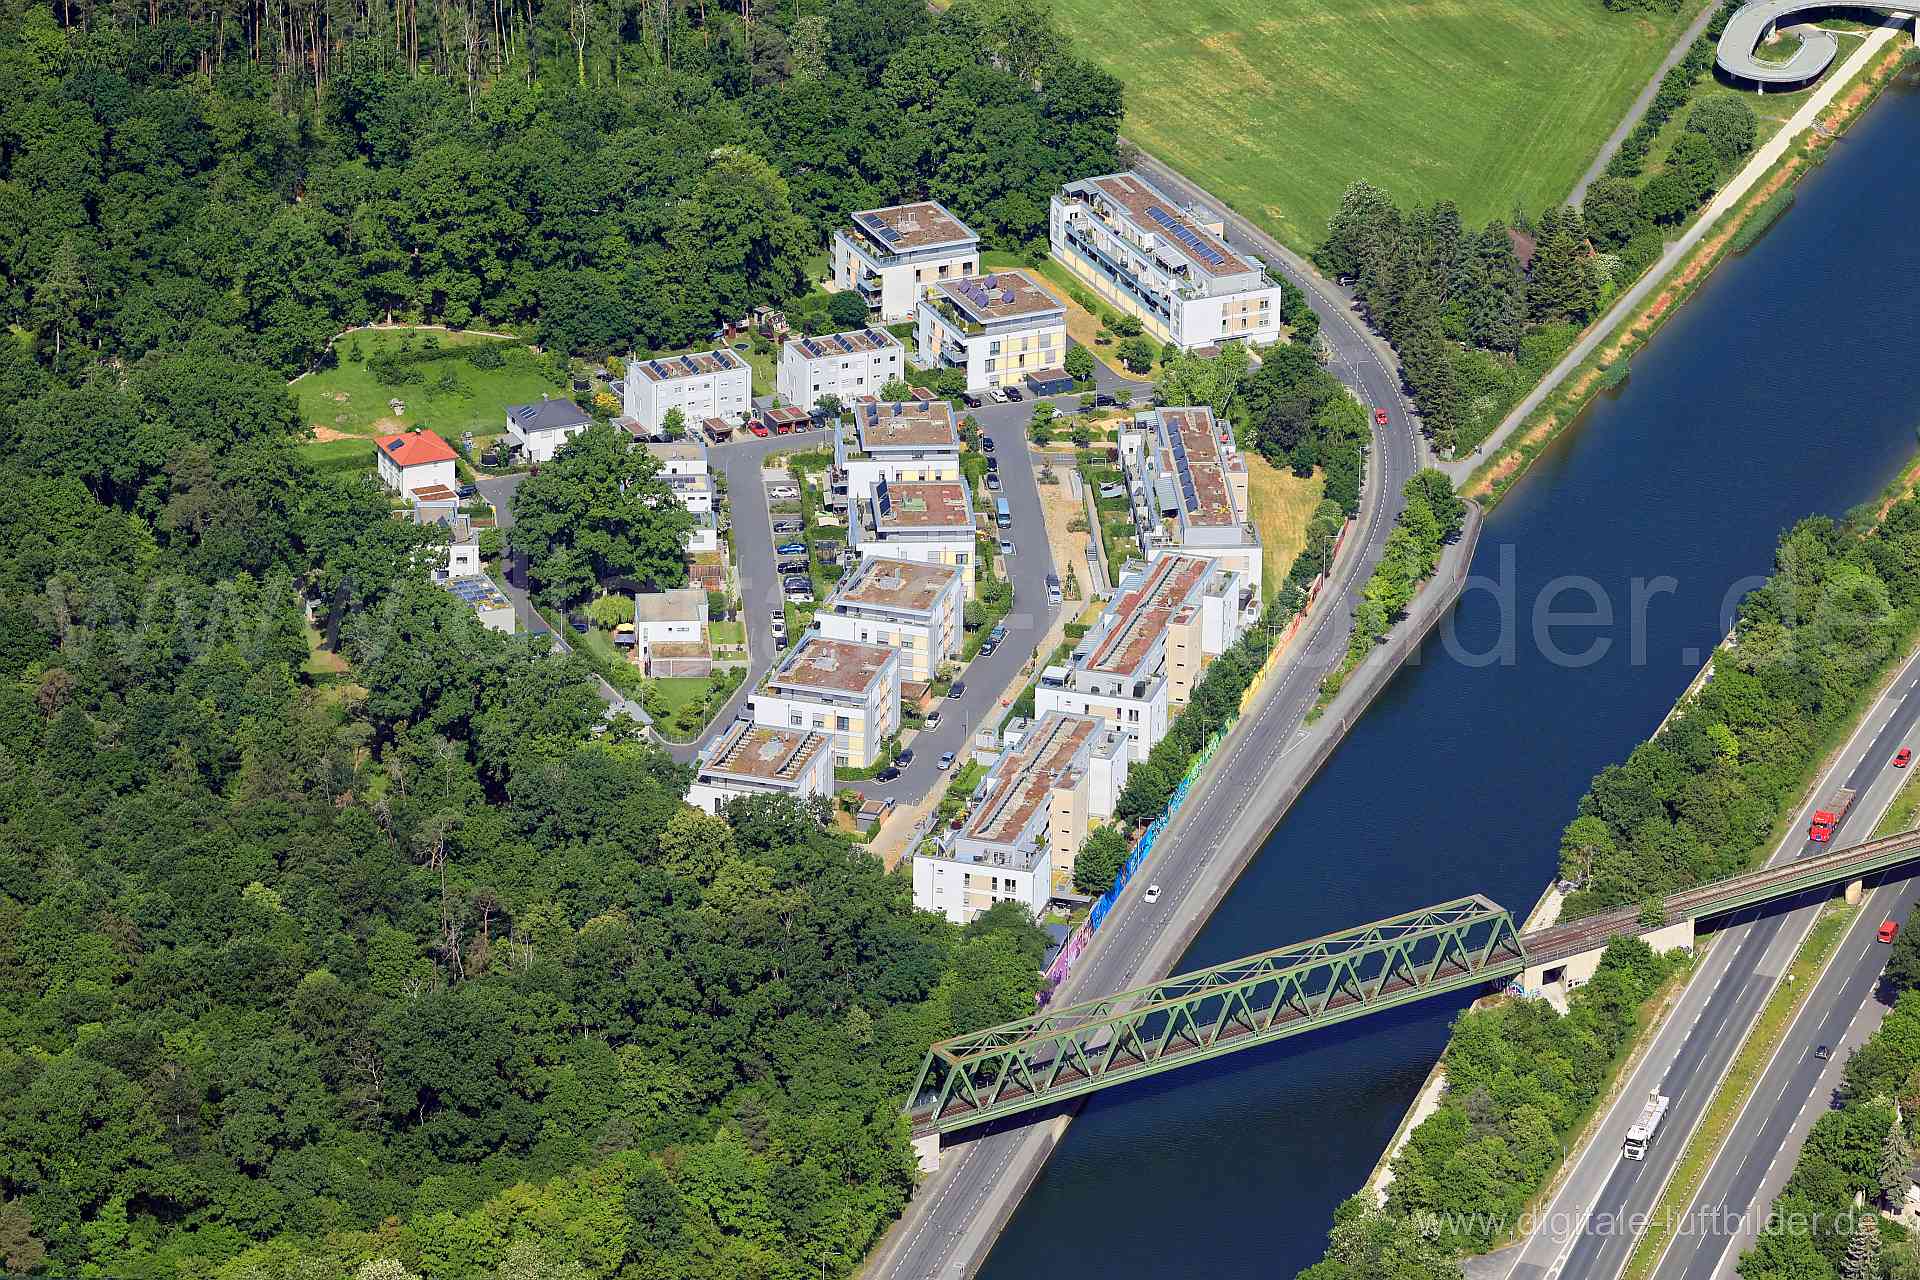 Luftbild - Grundigpark, Ort: Fürth, Tags: Main-Donau-Kanal, Rangaubrücke, Eisenbahnbrücke, Grundigpark...